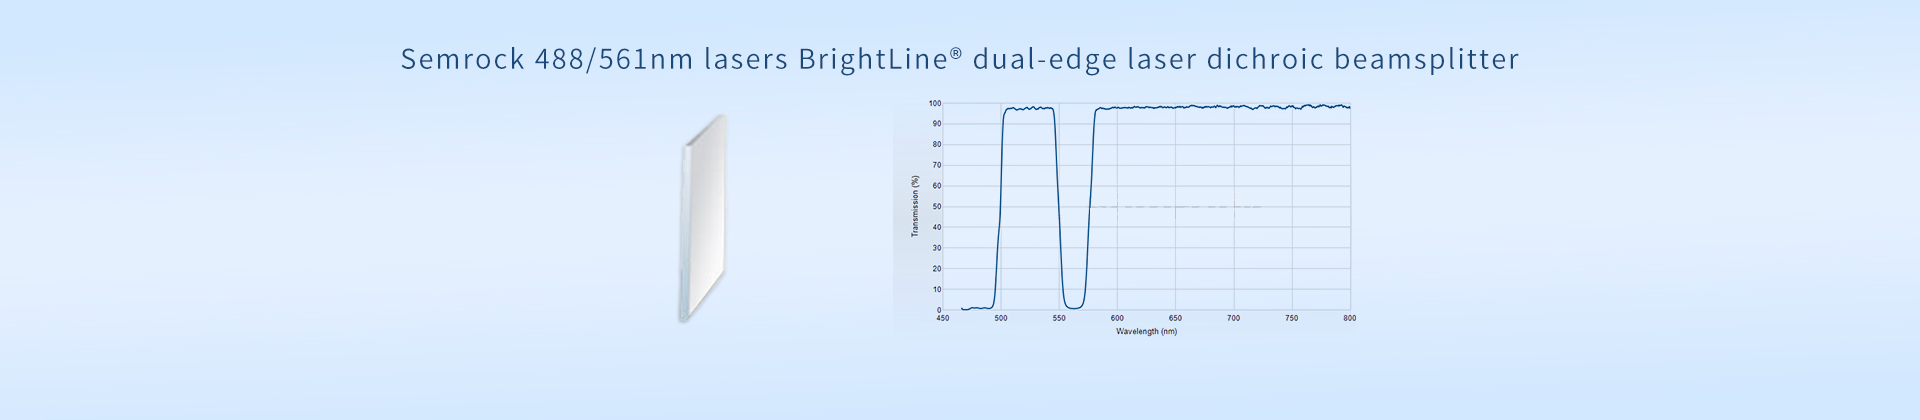 Semrock 488/561nm lasers BrightLine® dual-edge laser dichroic beamsplitter